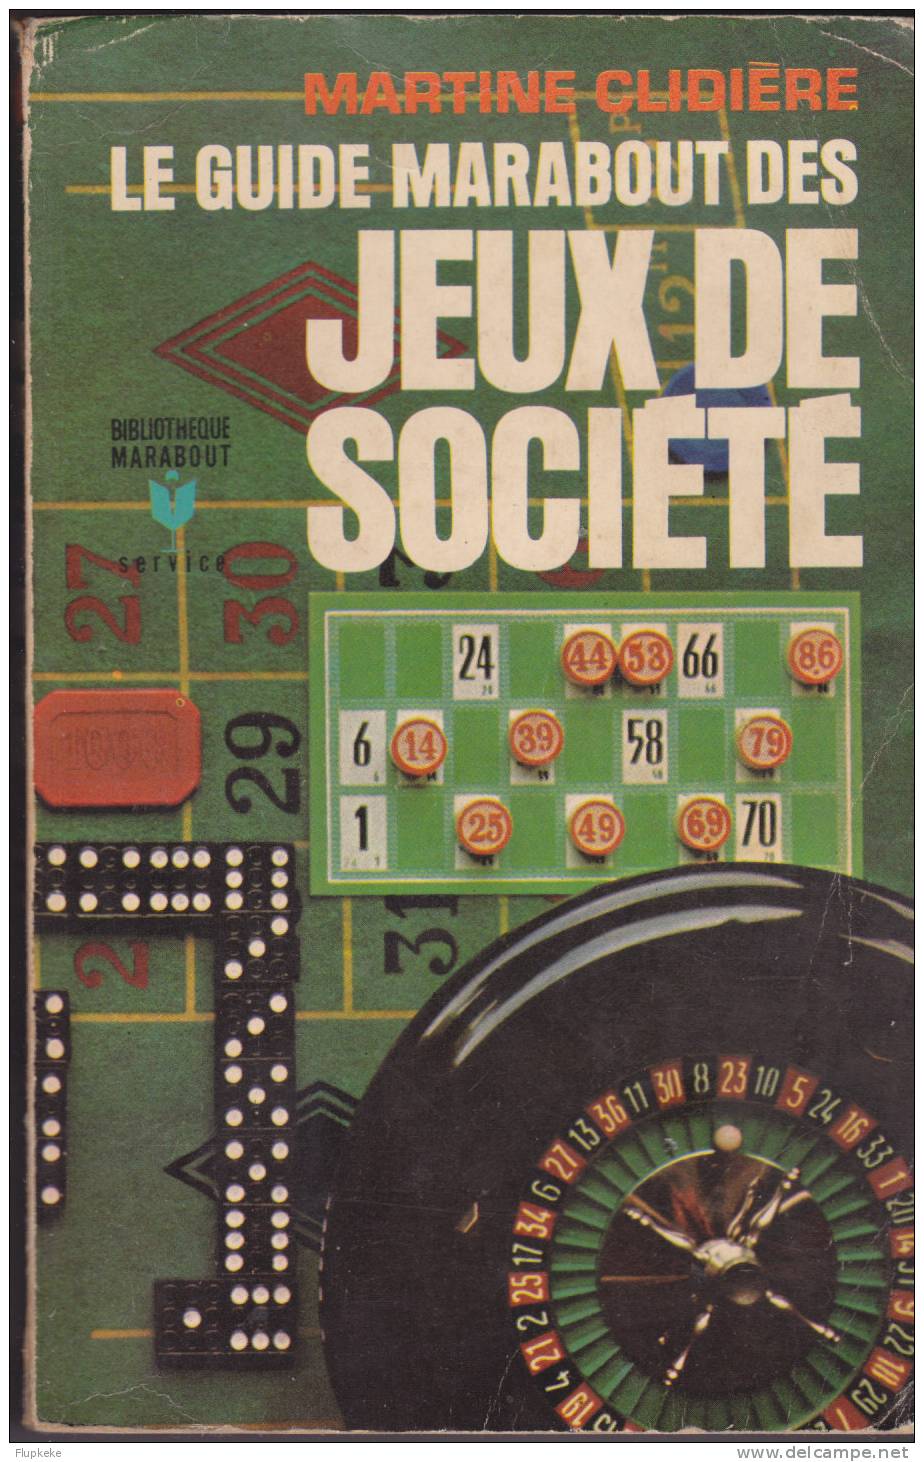 Bibliothèque Marabout MS 80 Le Guide Marabout Des Jeux De Société Martine Clidière 1968 - Belgische Autoren